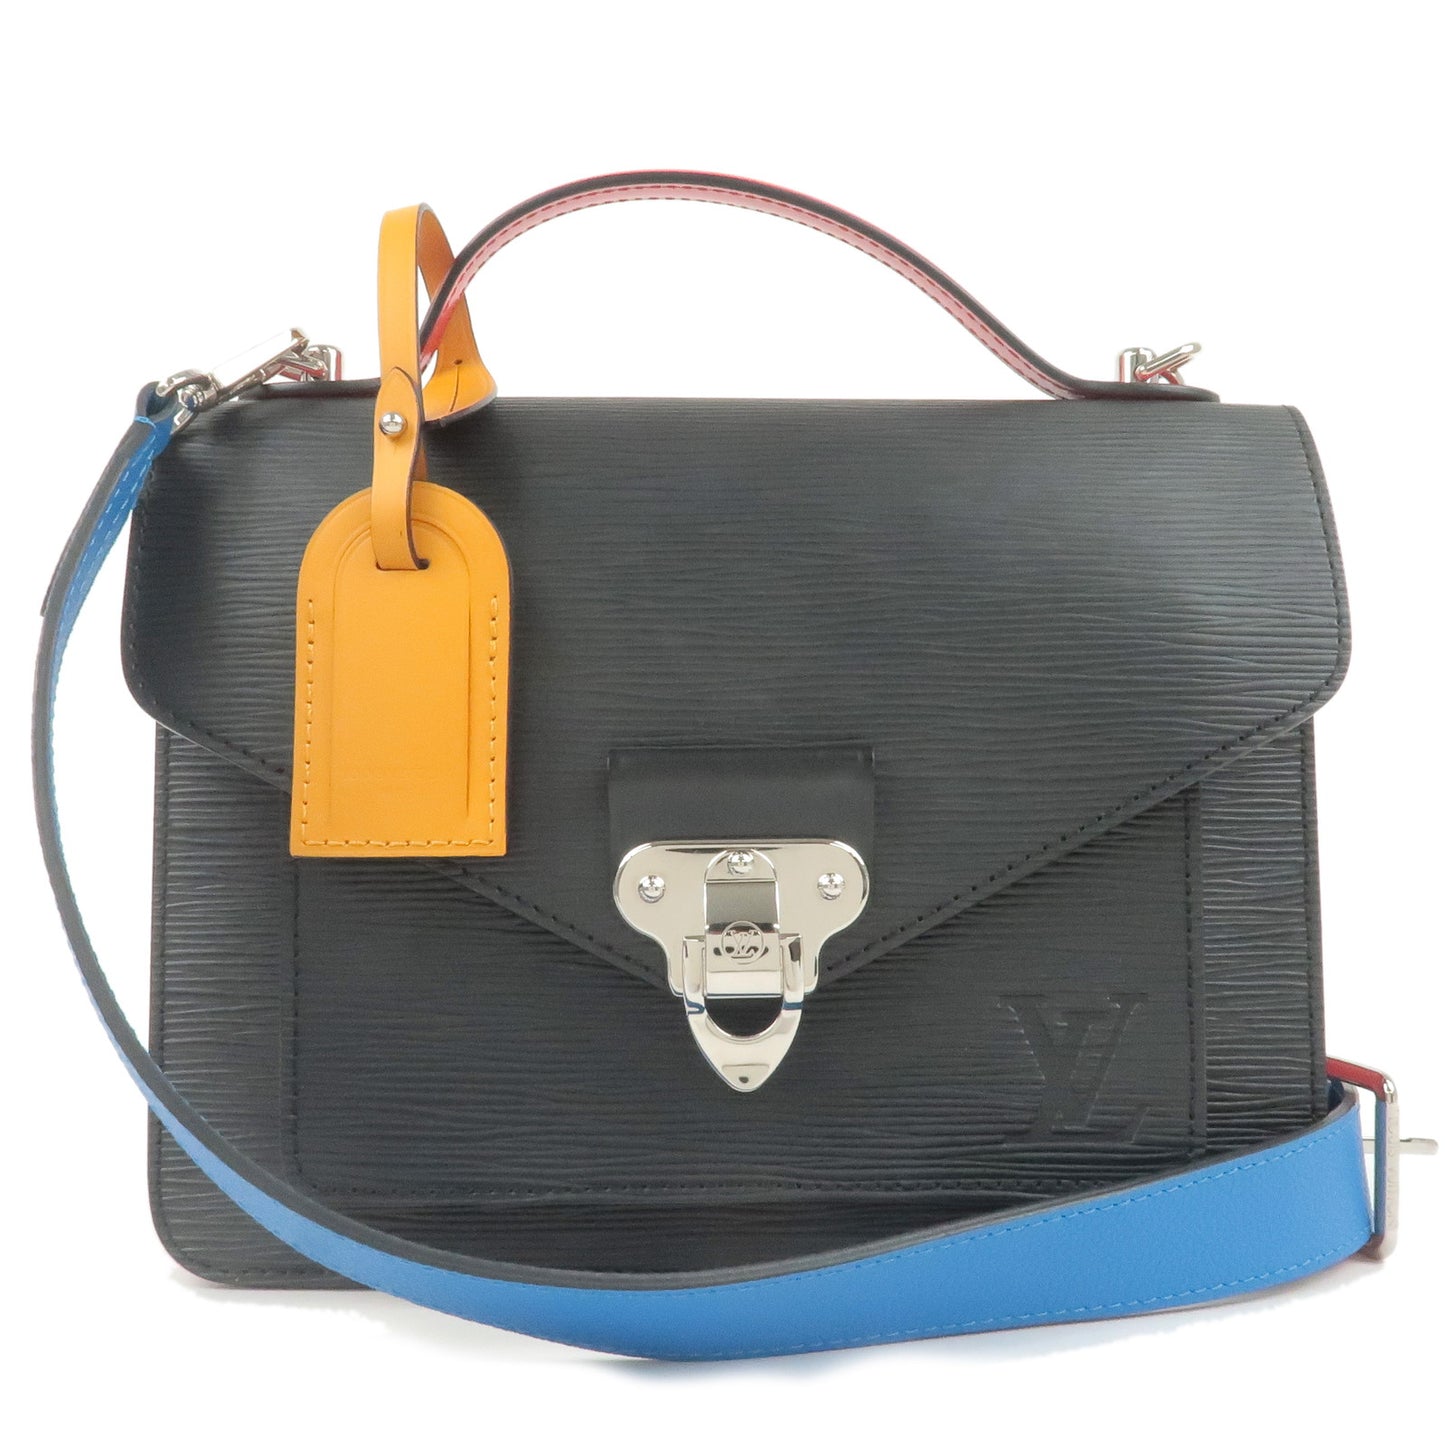 Louis Vuitton Handbag Shoulder Bag 2Way Epi Neo Monceau Noir (Black)  Leather Ladies M55403